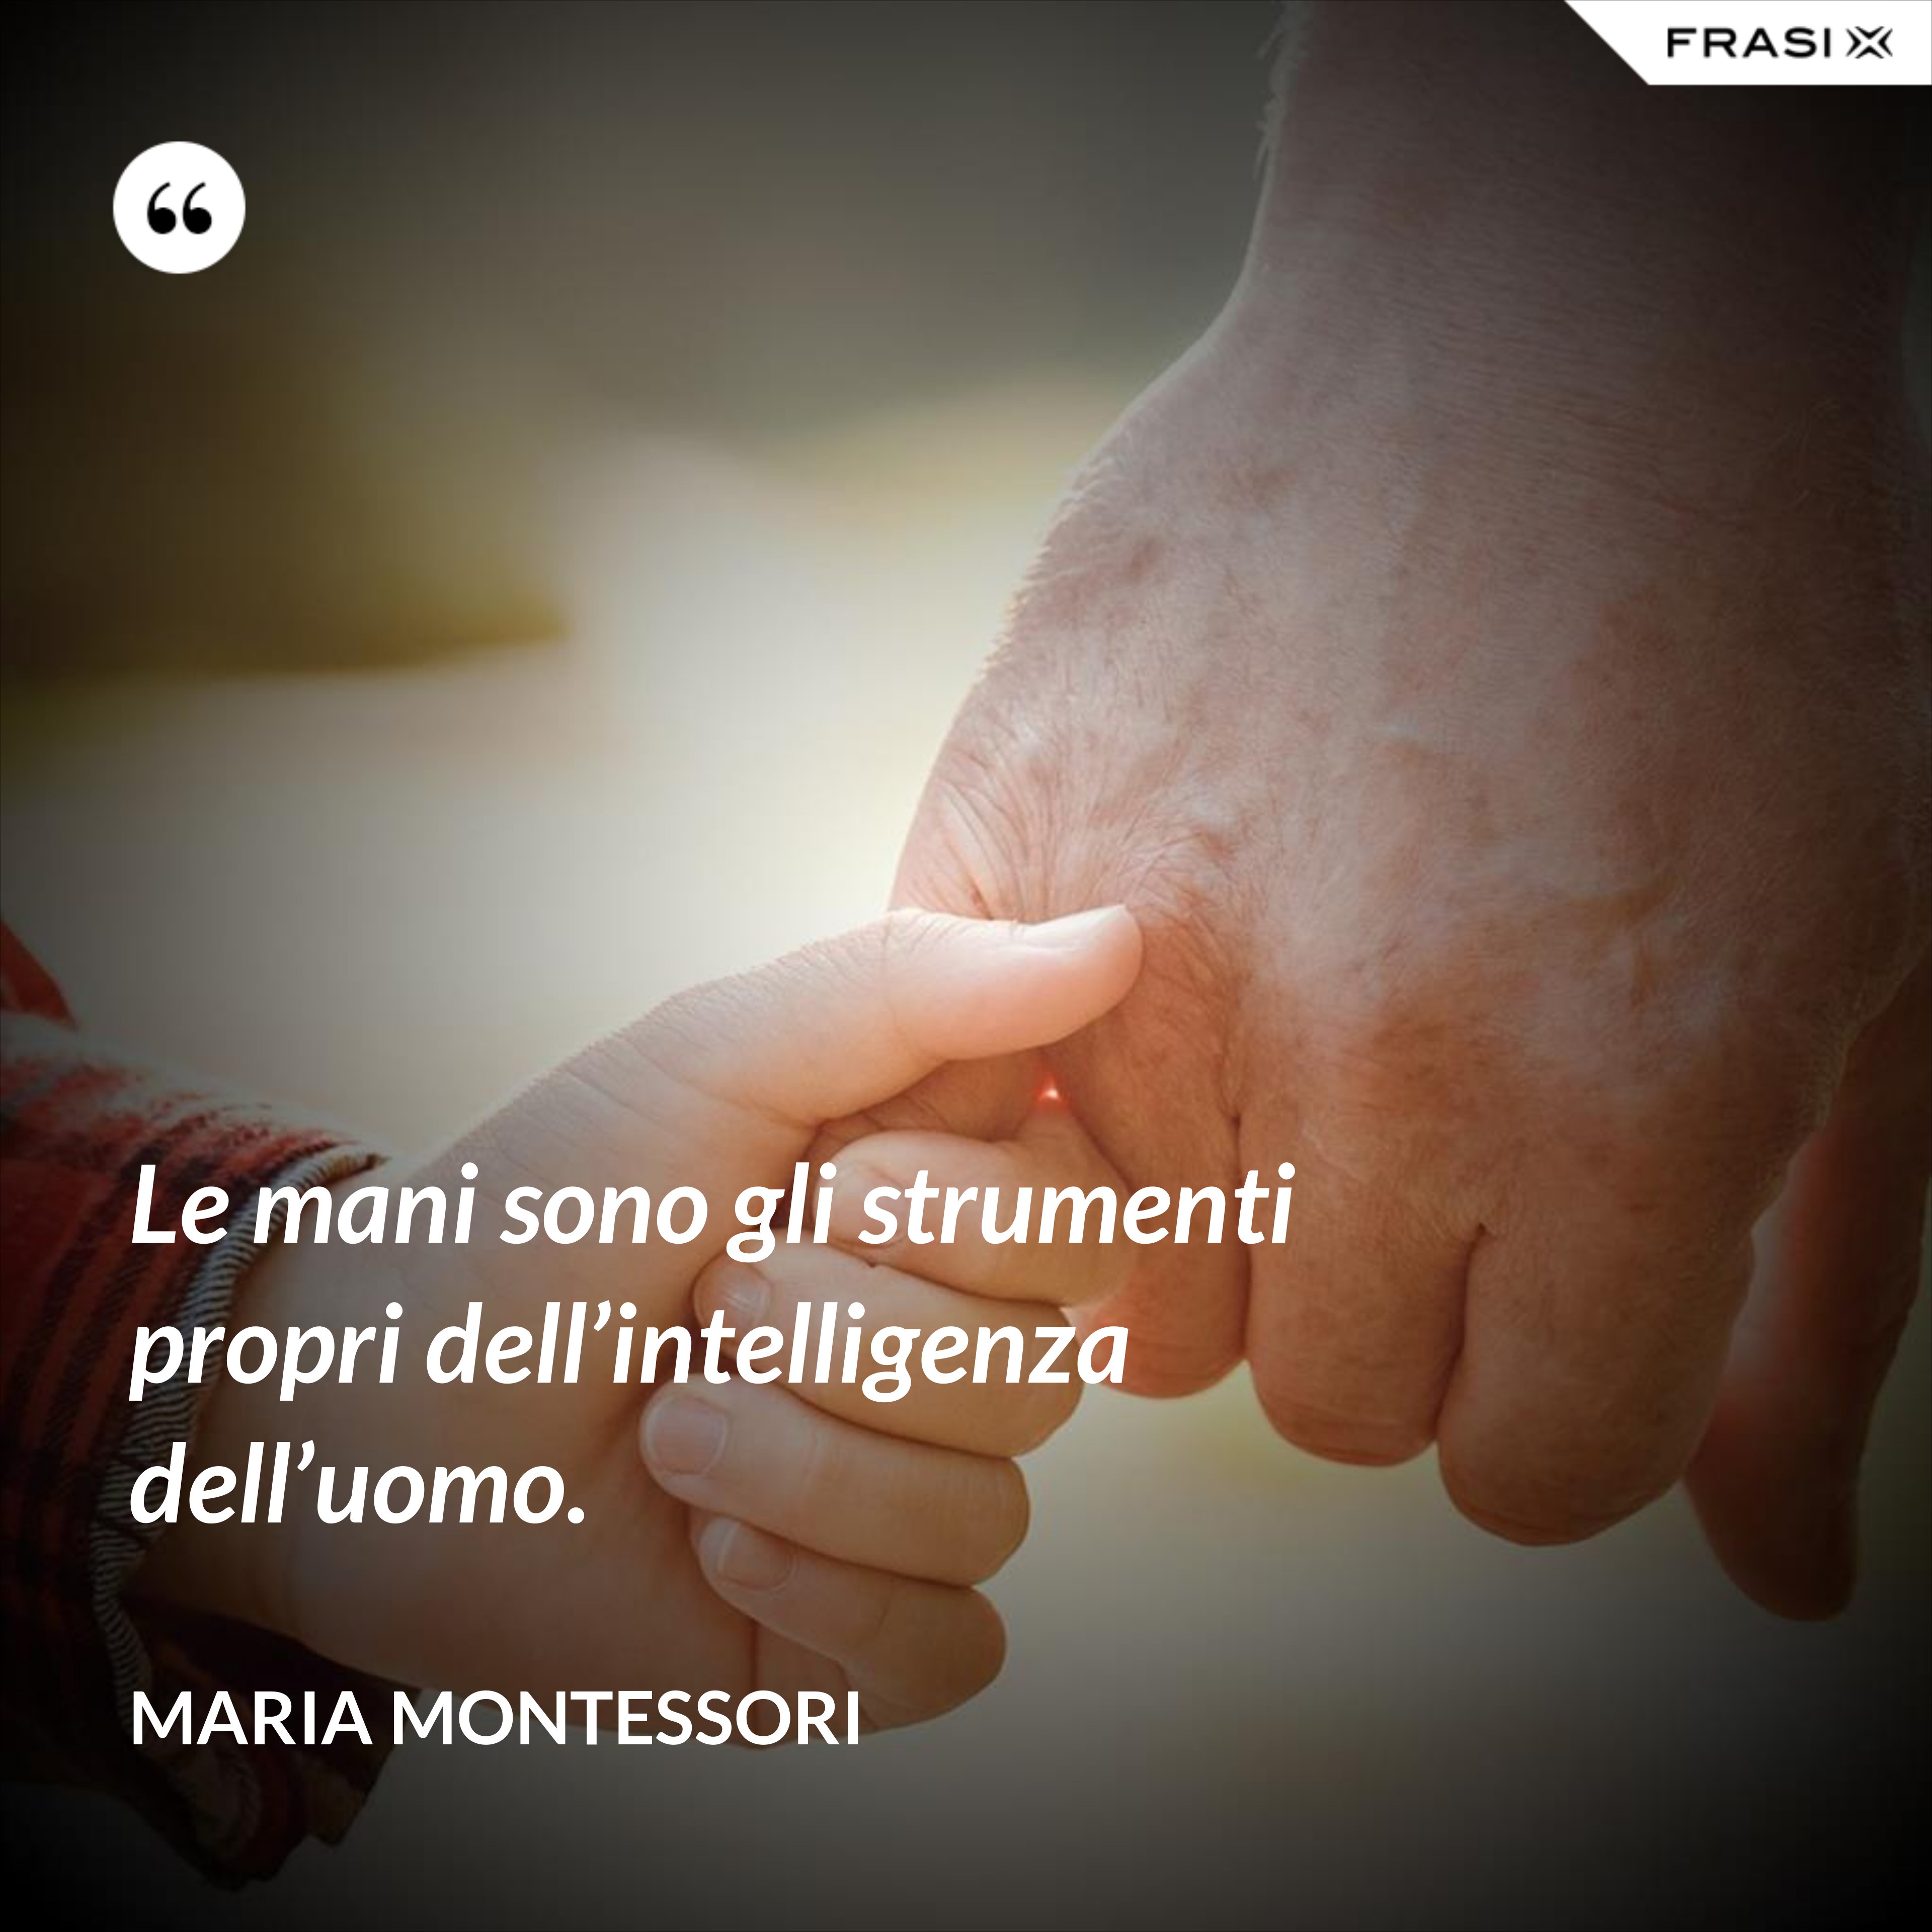 Le mani sono gli strumenti propri dell’intelligenza dell’uomo. - Maria Montessori